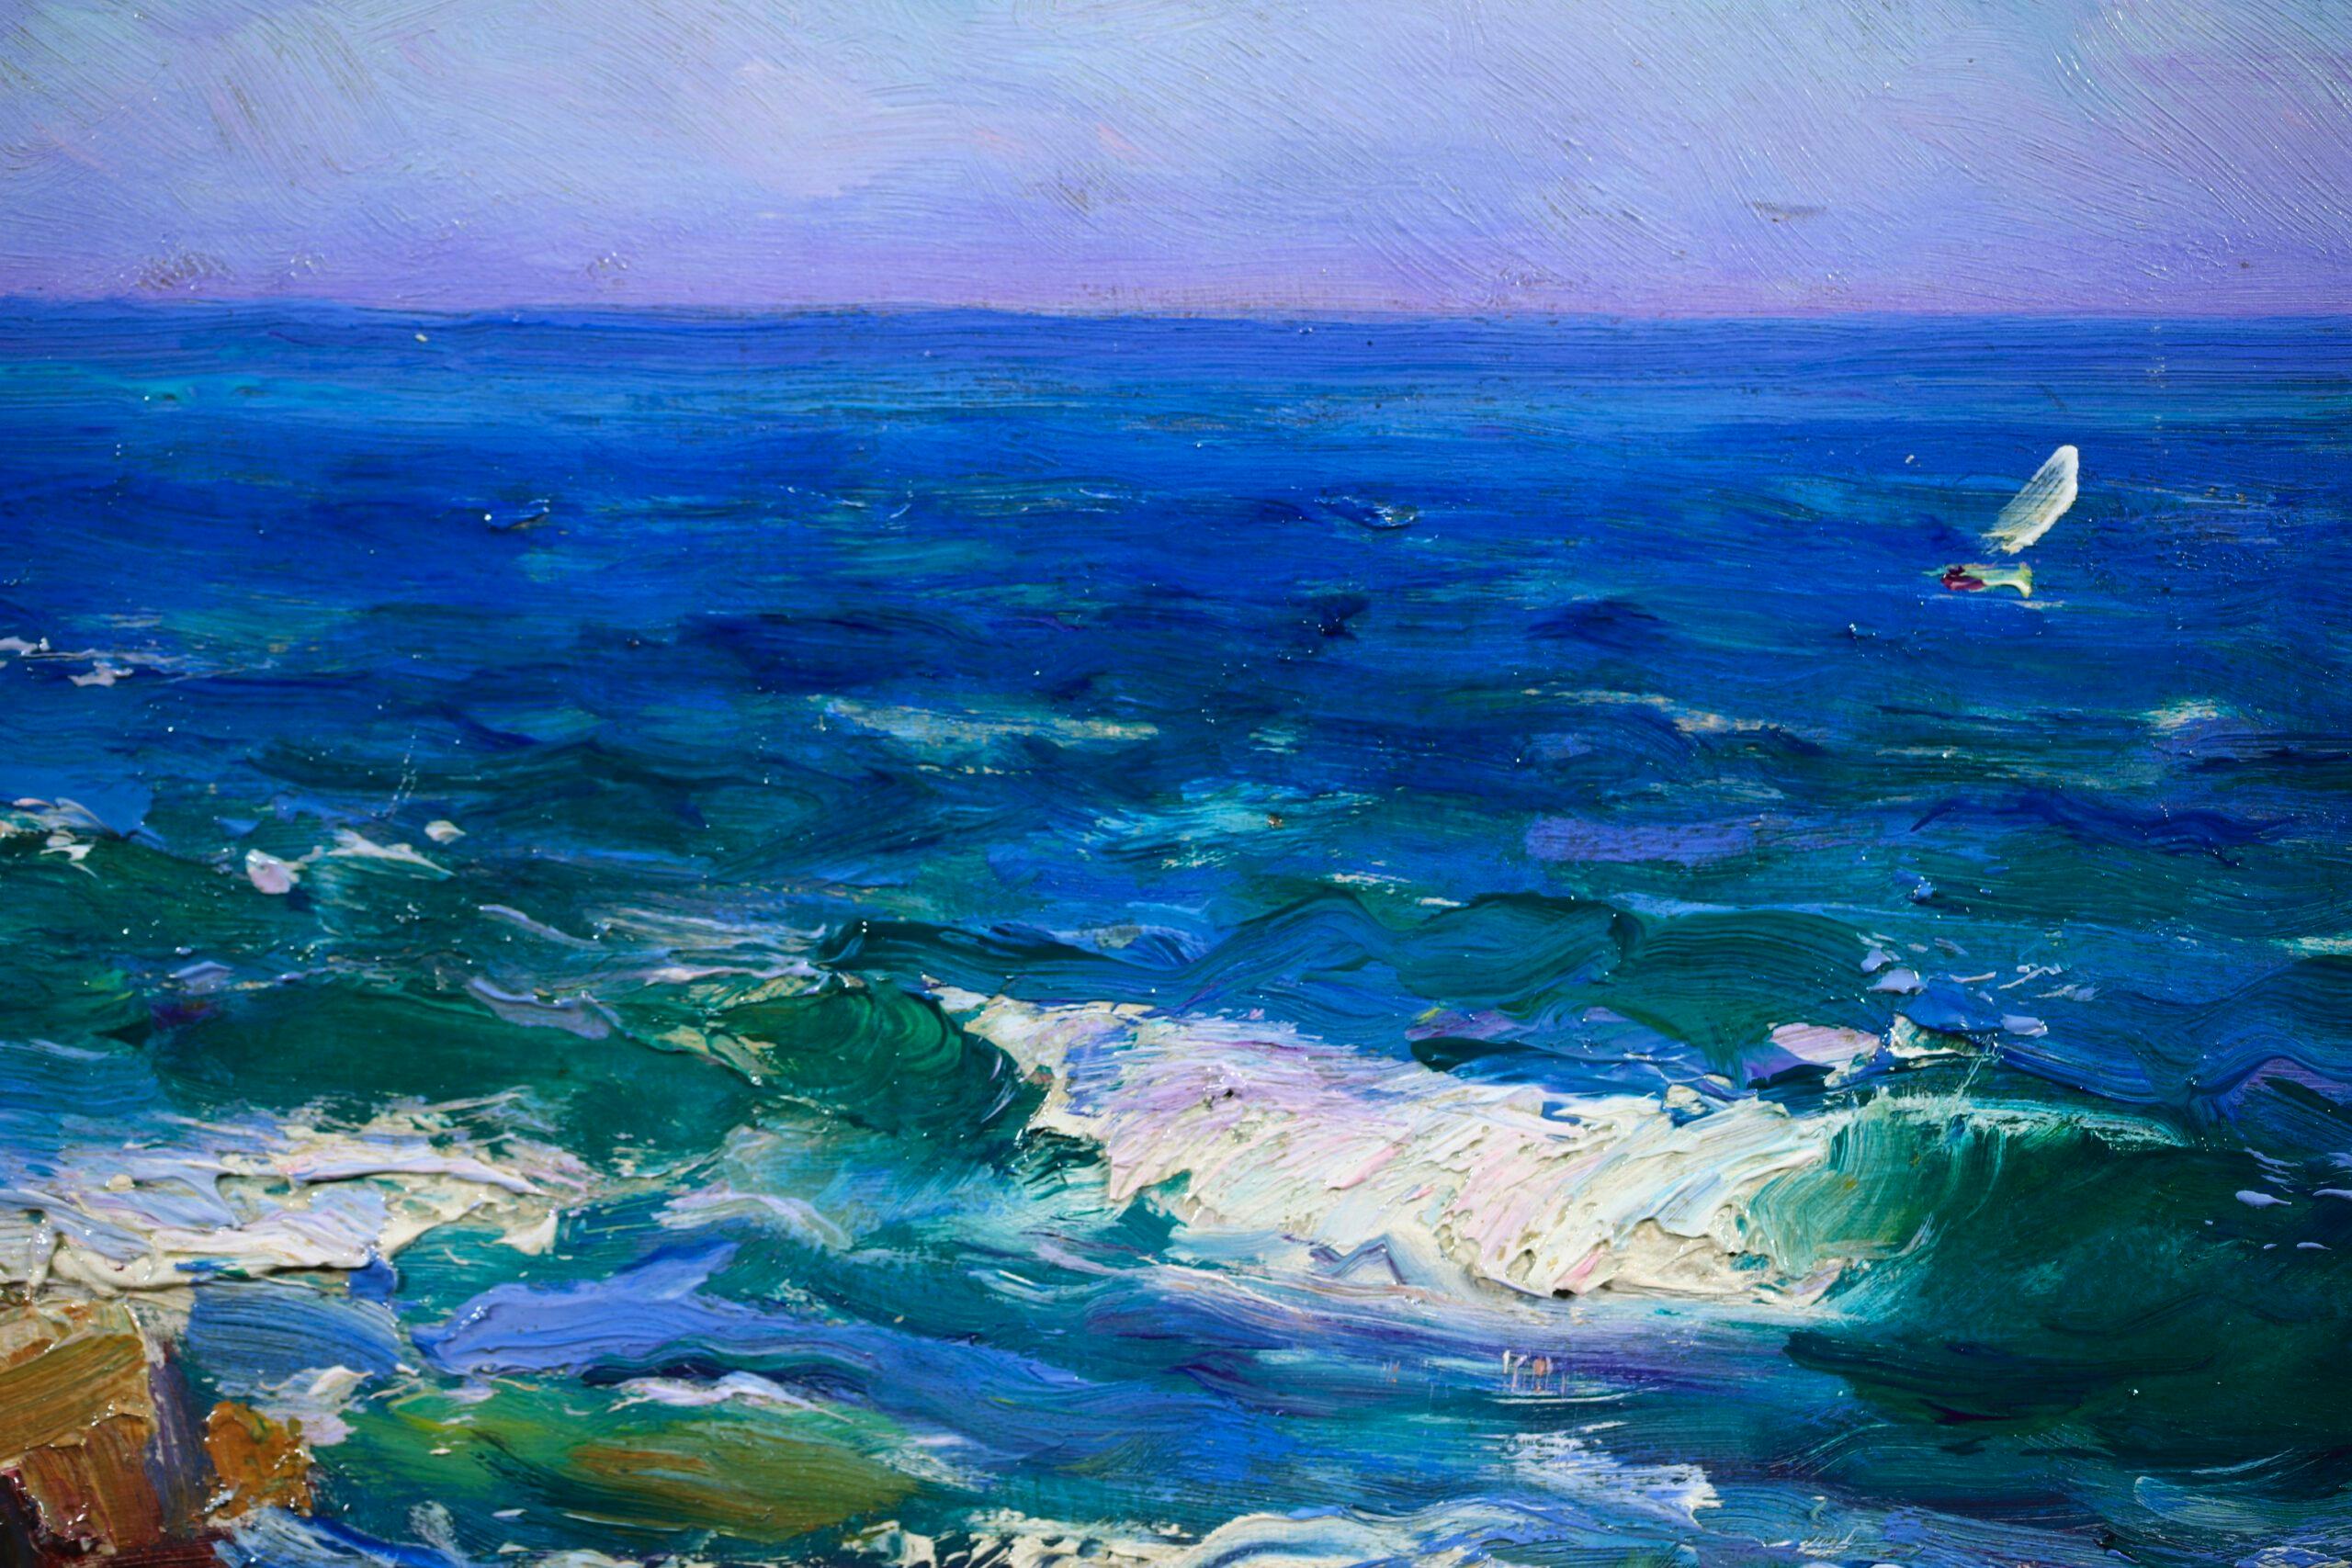 La Cote de Marseille - Post Impressionist Sea Landscape Oil by Louis Gaussen - Post-Impressionist Painting by Adolphe Louis Gaussen